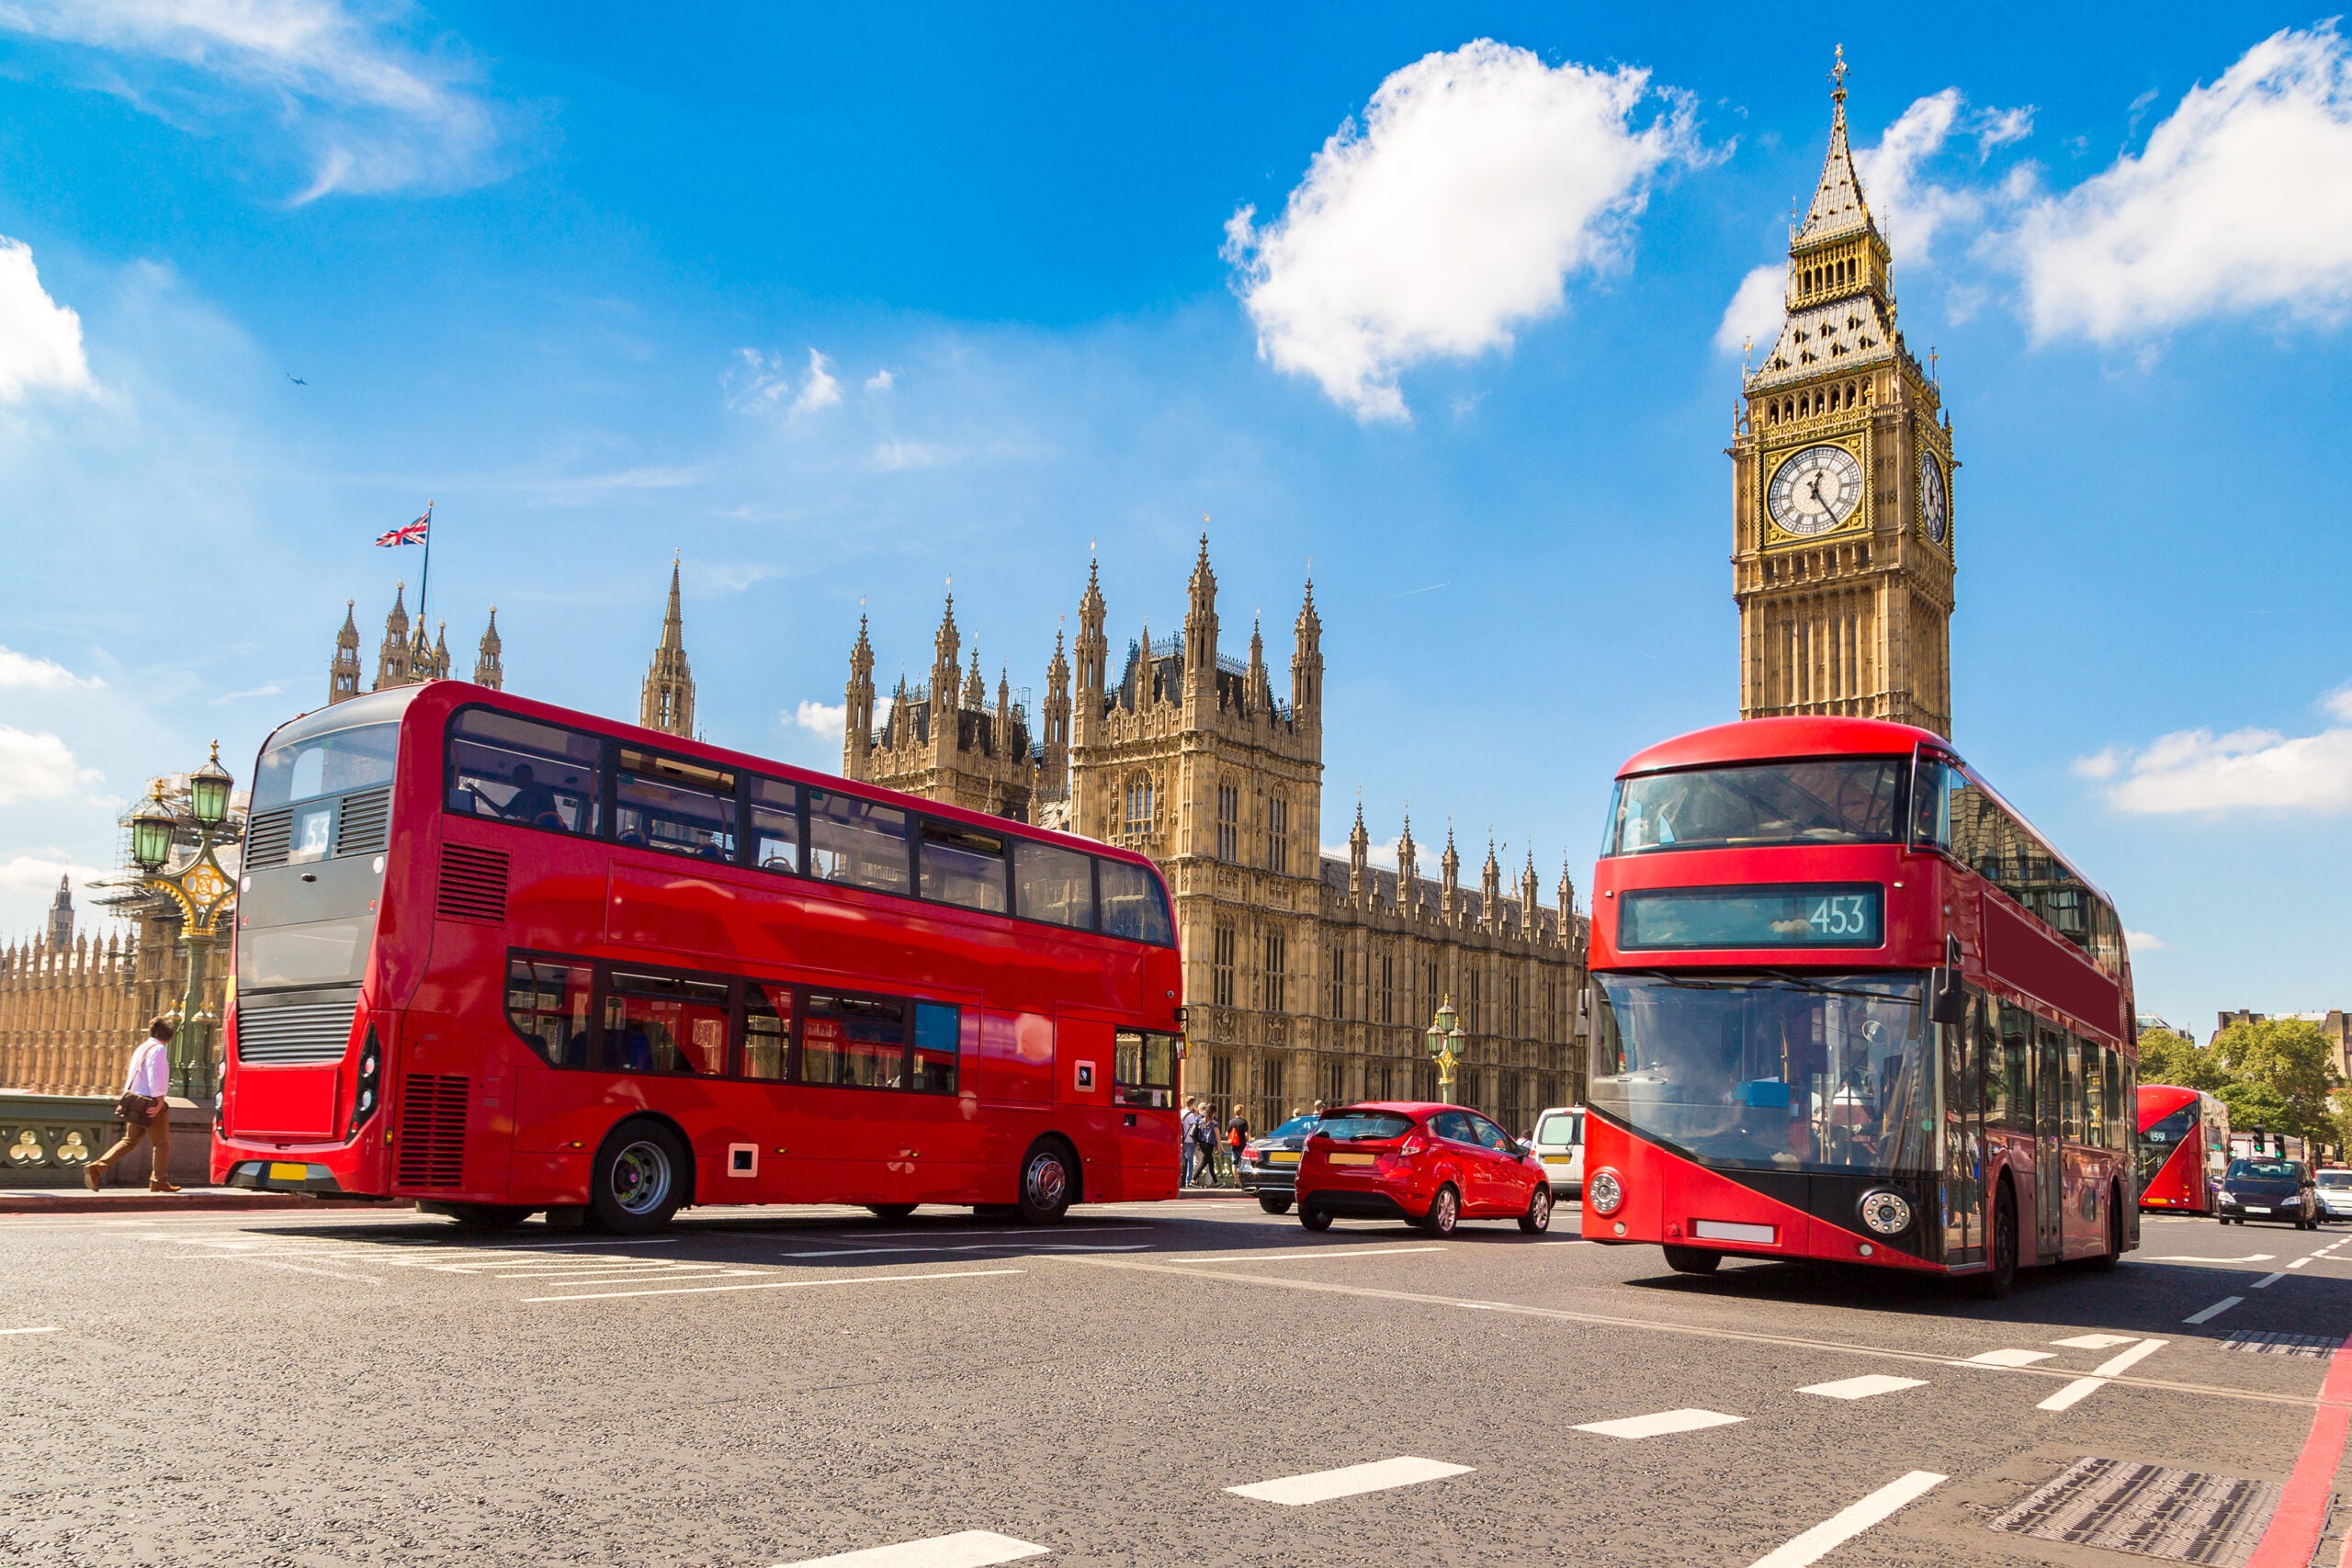 London Big Ben, Westminster Bridge,And Red Double Decker Bus